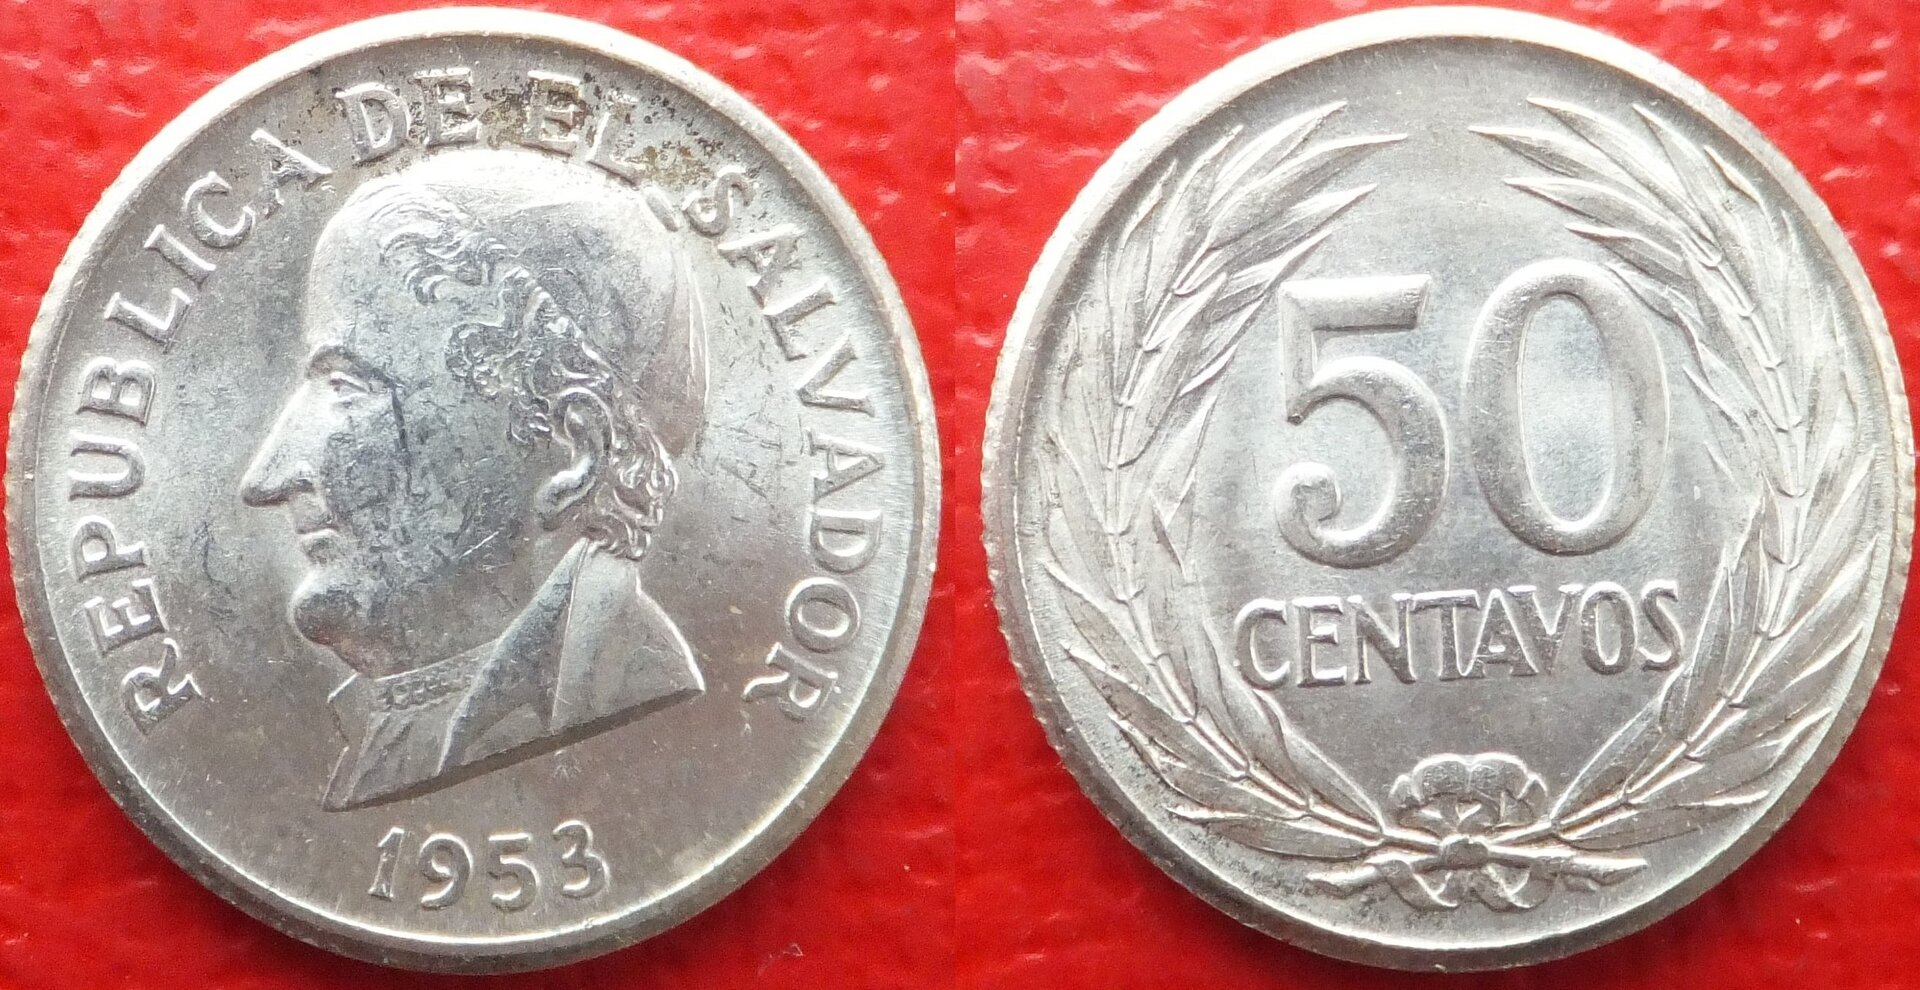 El Salvador 50 centavos 1953 (3).jpg